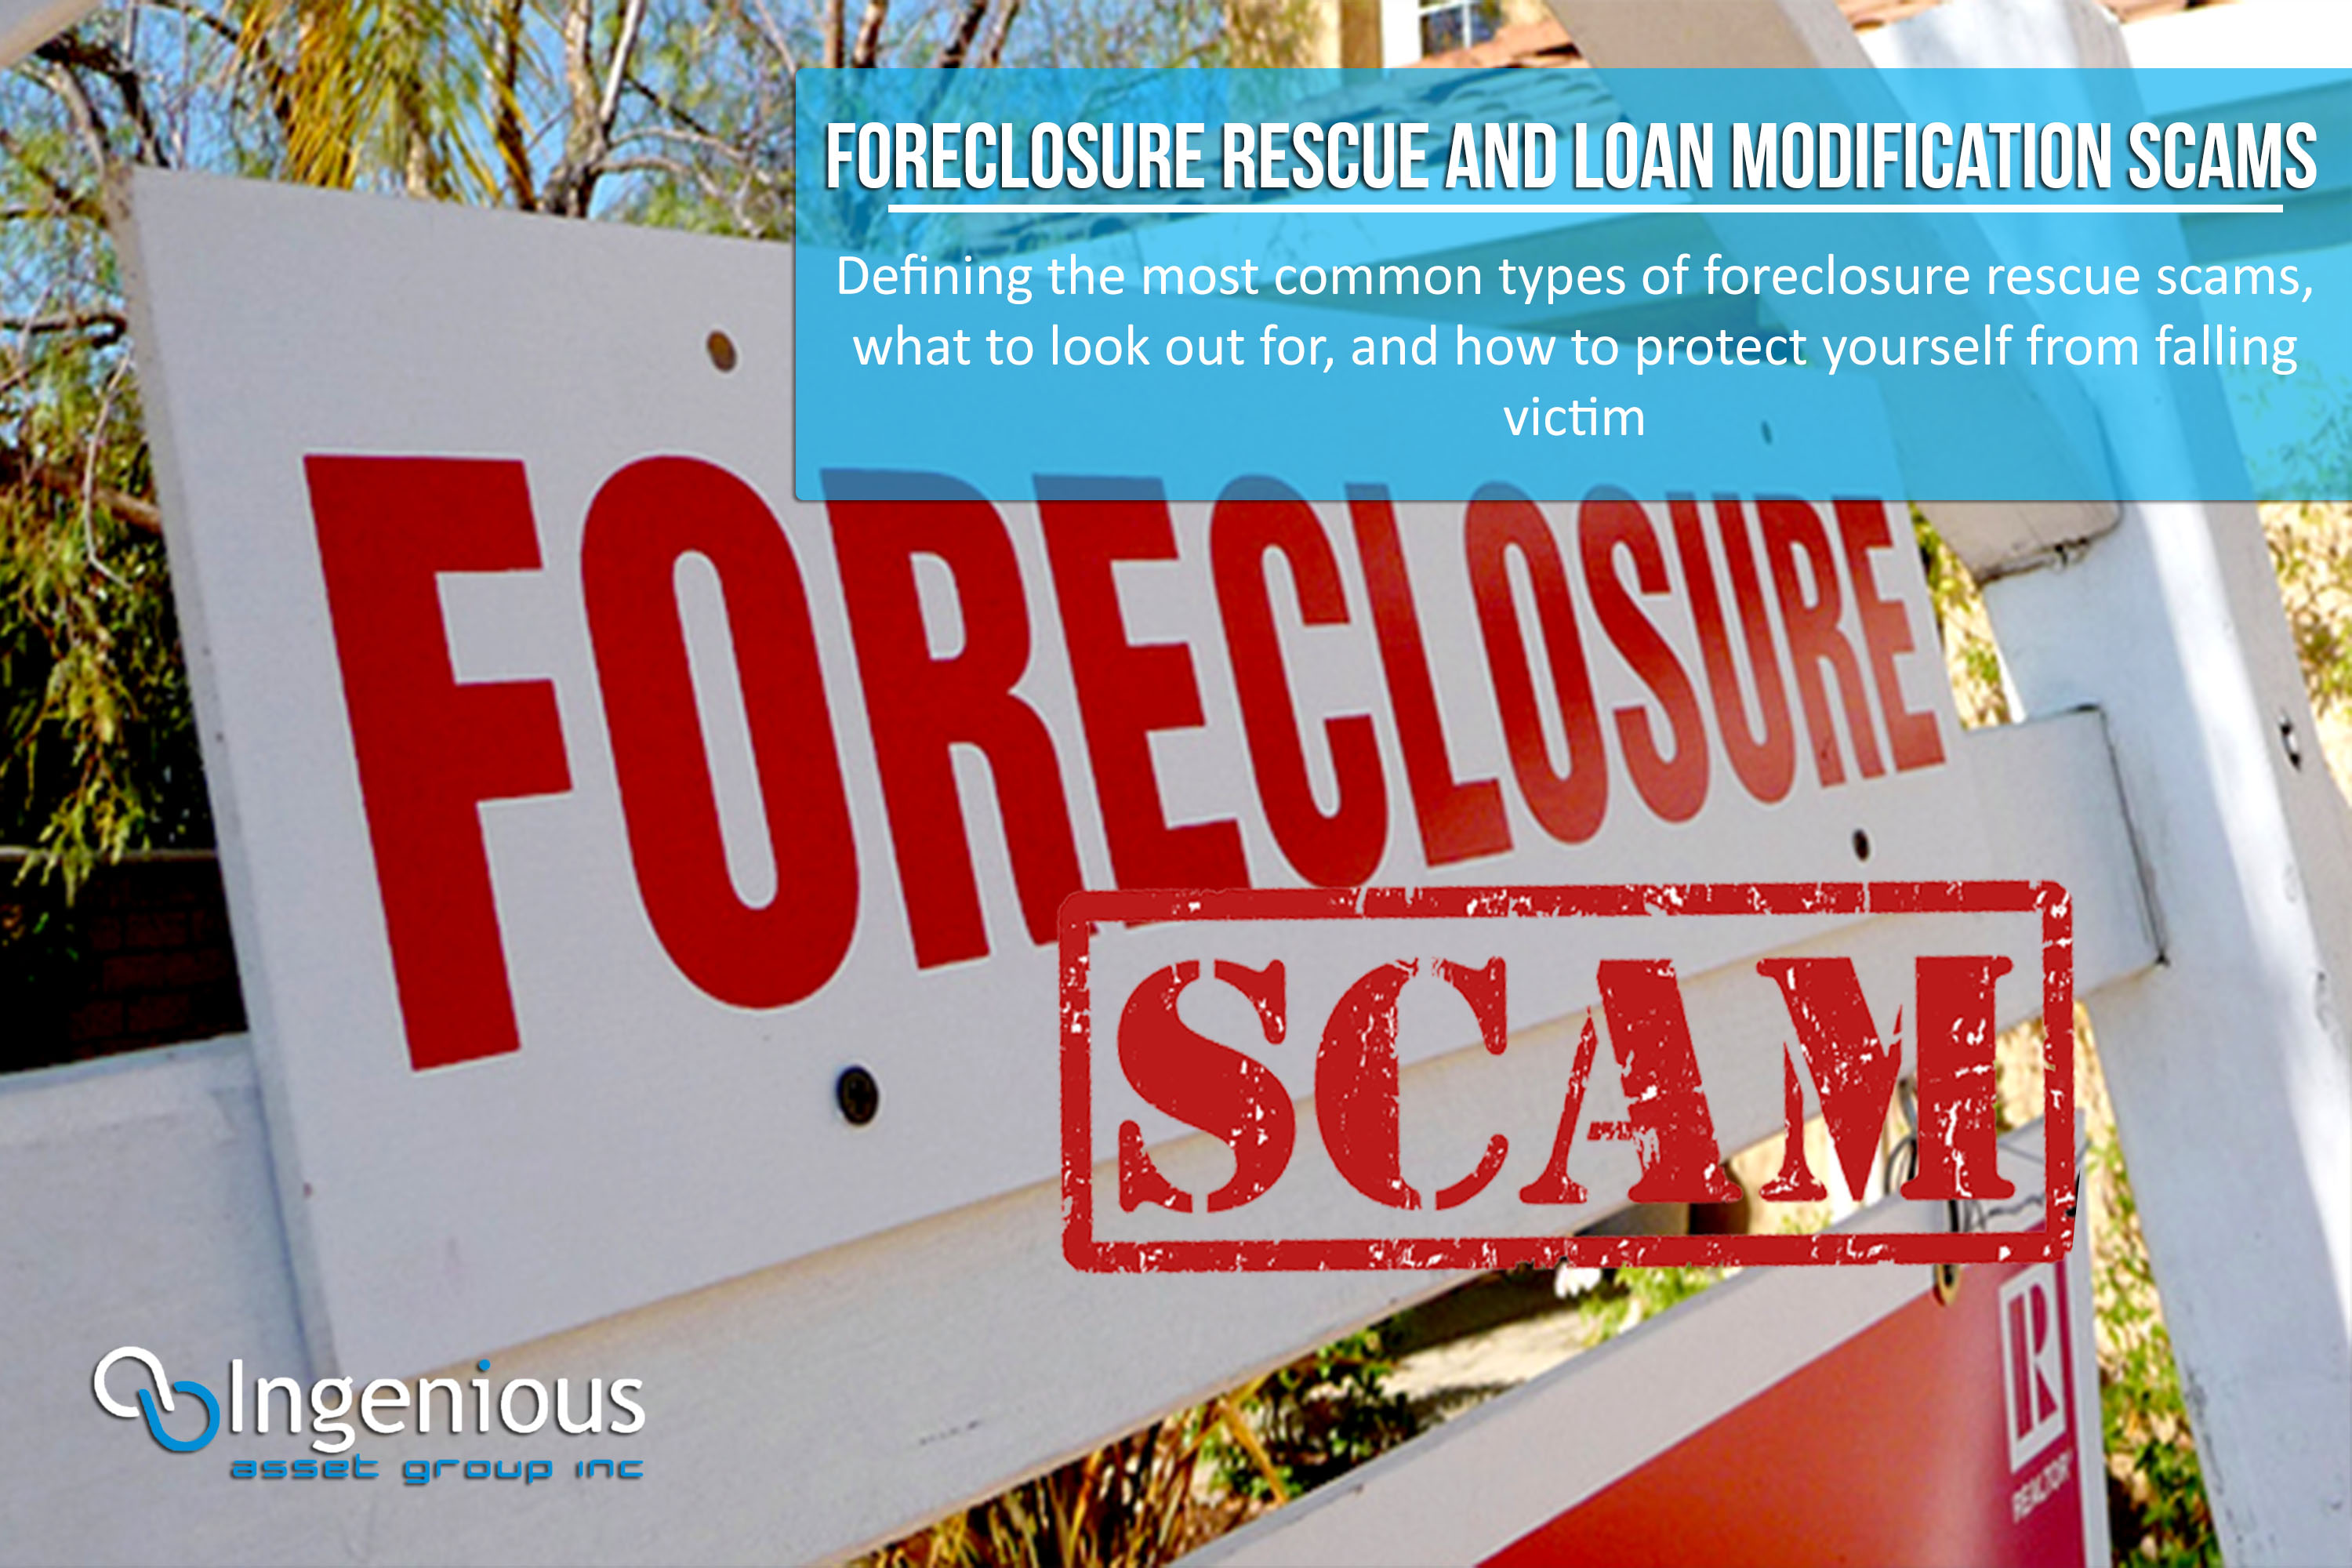 Consumer Alert - Loan Modification & Foreclosure Rescue Scams!